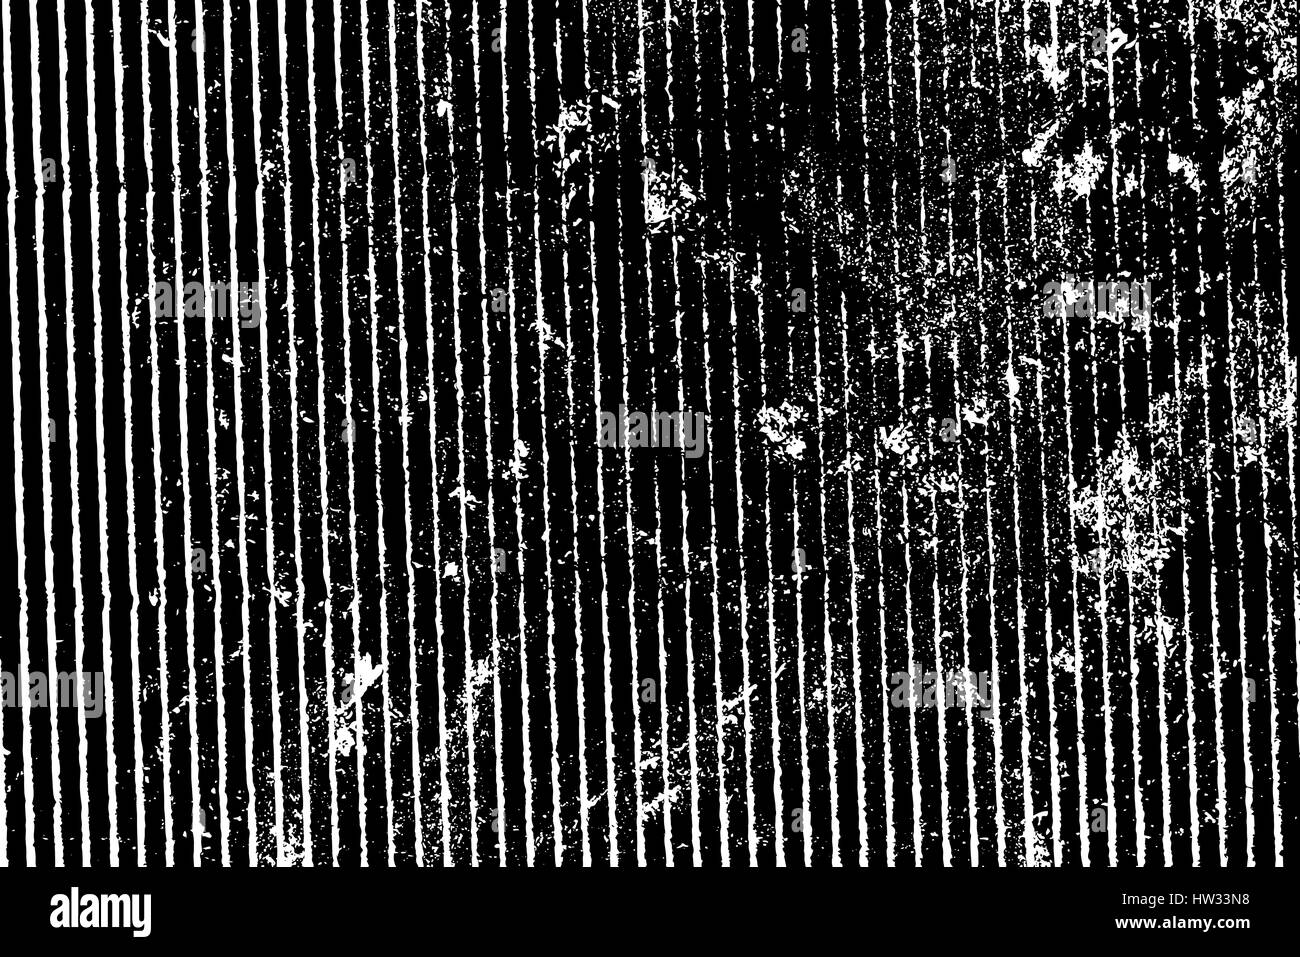 Isolierte Grunge Textur des geometrischen Material in schwarz und weiß, Vintage-Hintergrund-Ressource. EPS10 Vektor. Stock Vektor